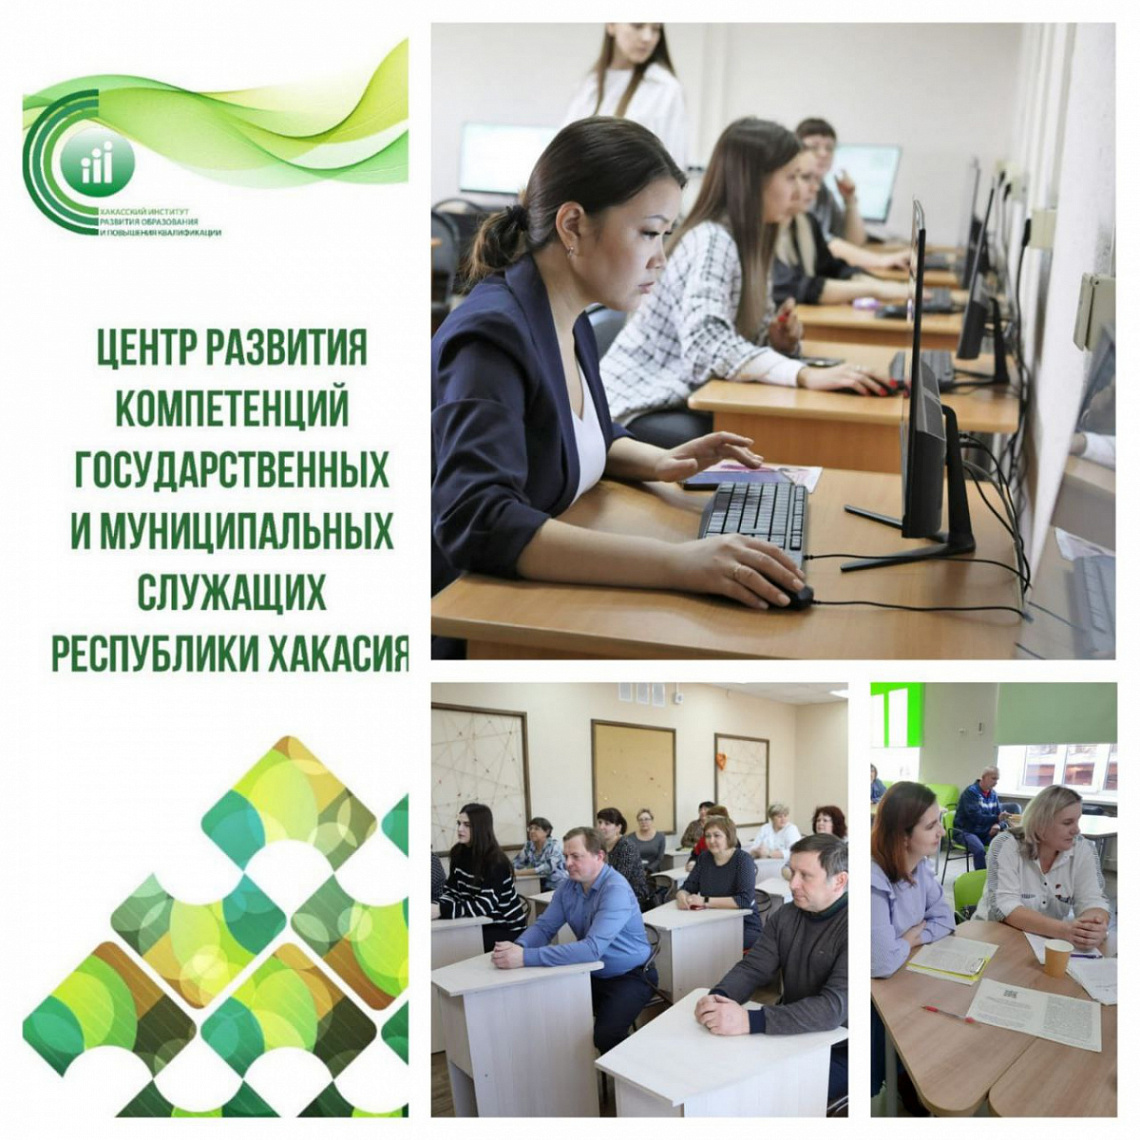 В Институте открылся Центр развития компетенций государственных и муниципальных служащих Республики Хакасия